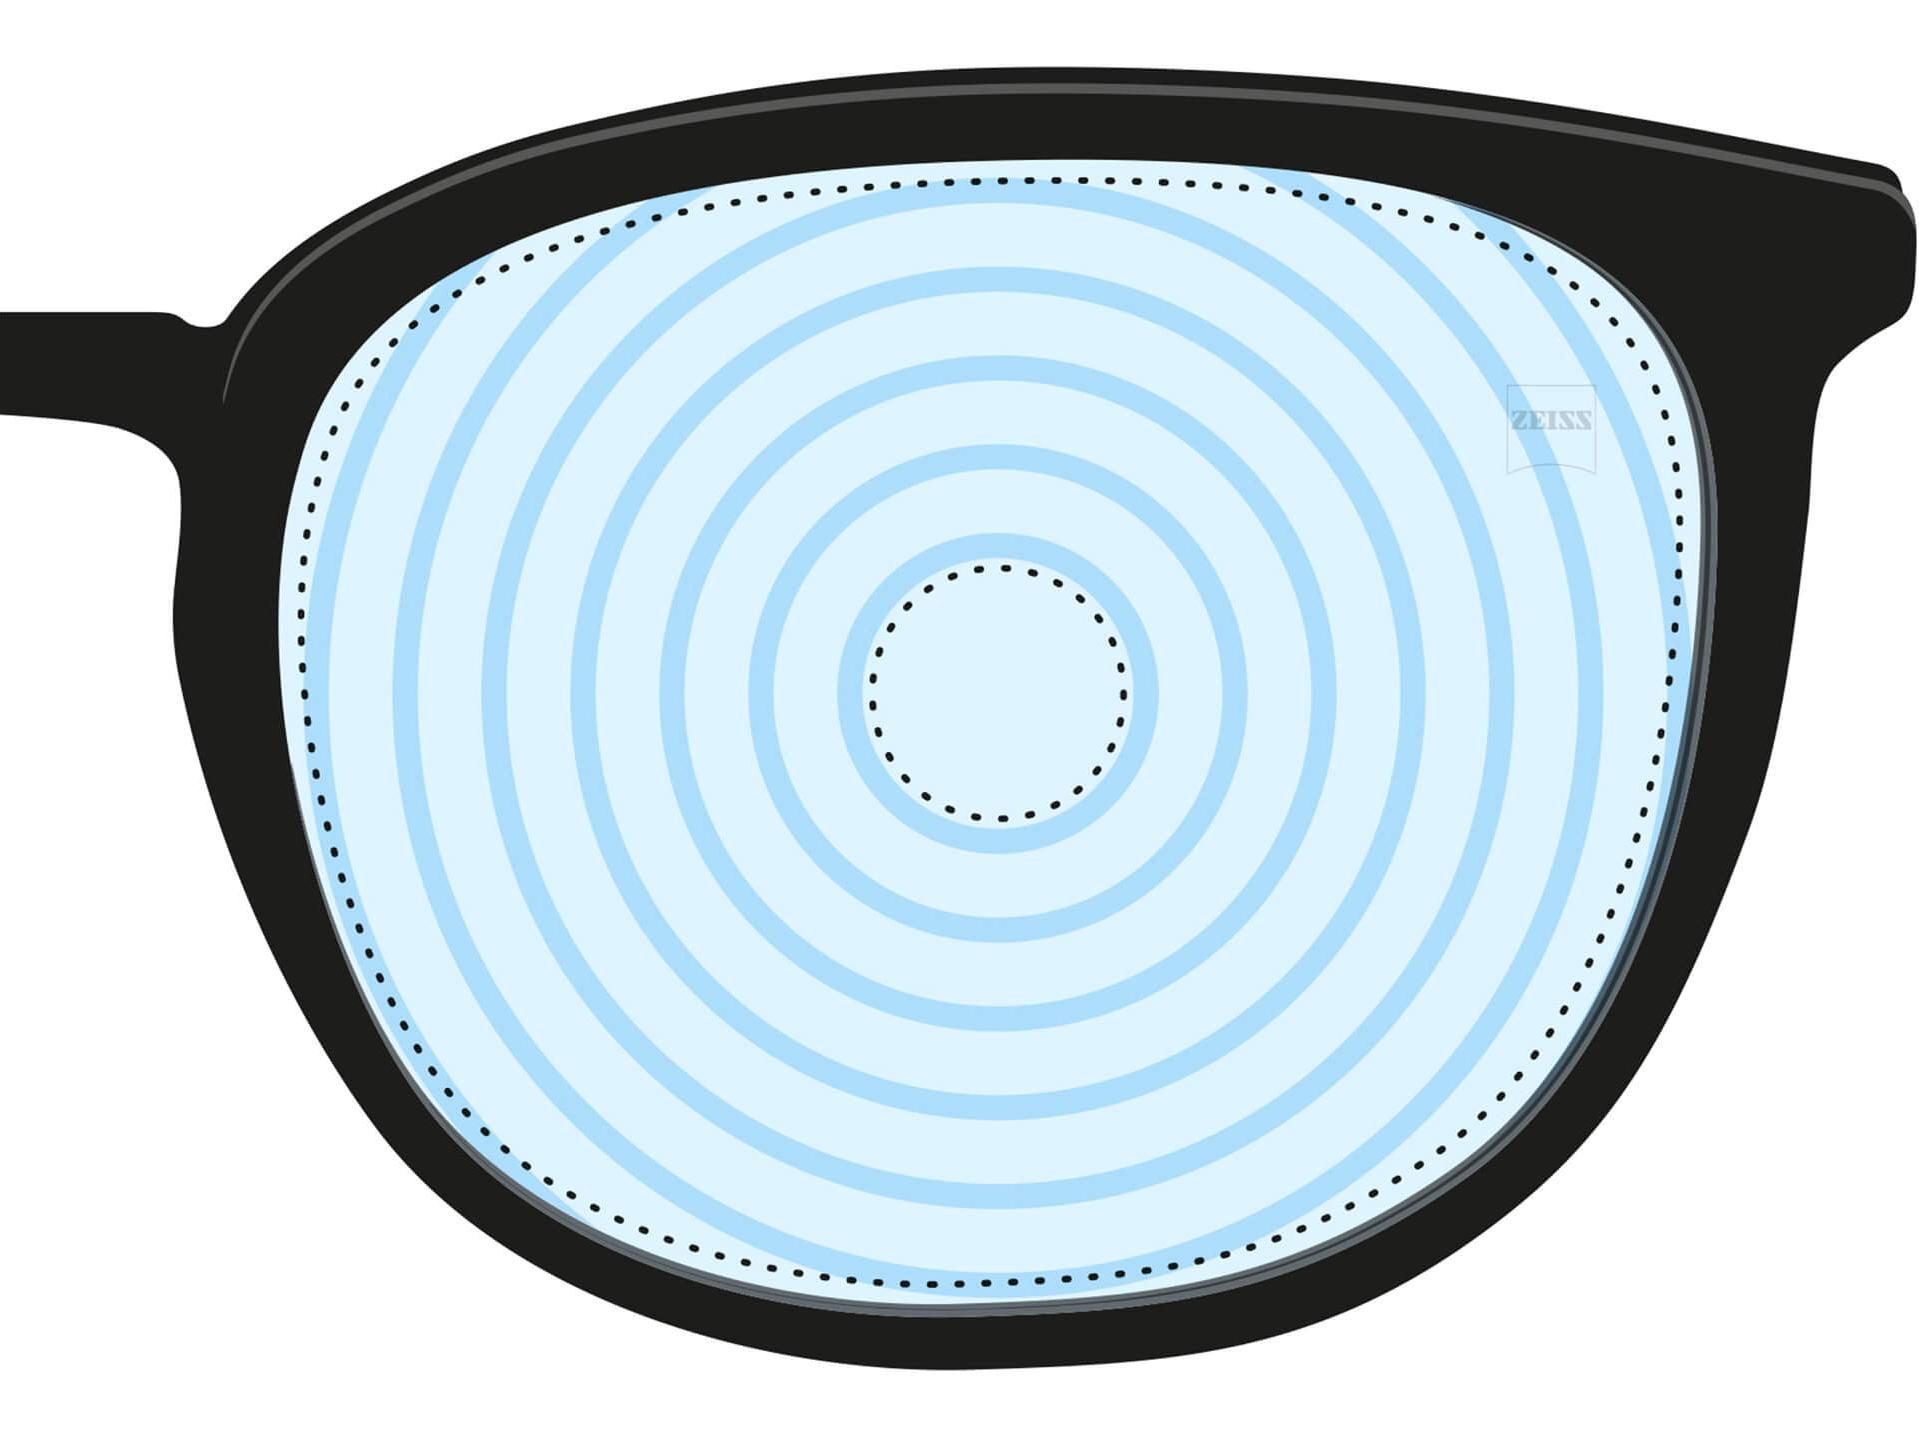 Een illustratie van een brillenglas voor myopiebeheer. Het heeft concentrische cirkels die verschillende brillenglasvermogens voorstellen. Het is een voorbeeld van een brillenglasdesign voor gespecialiseerde doeleinden.